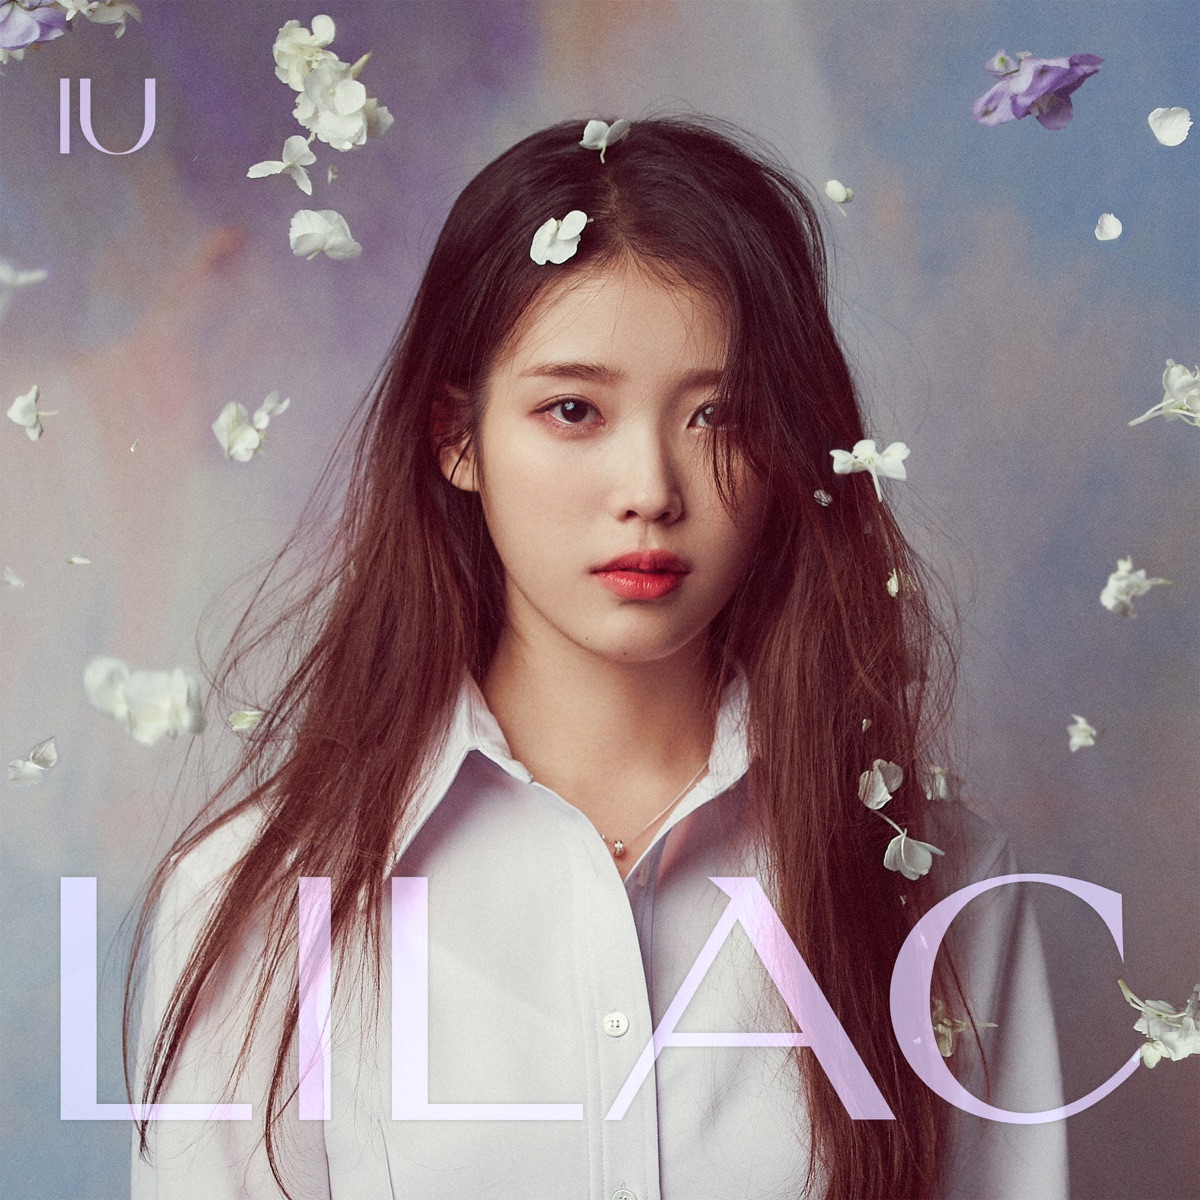 『IU - Ah puh 歌詞』収録の『IU 5th Album 'Lilac'』ジャケット